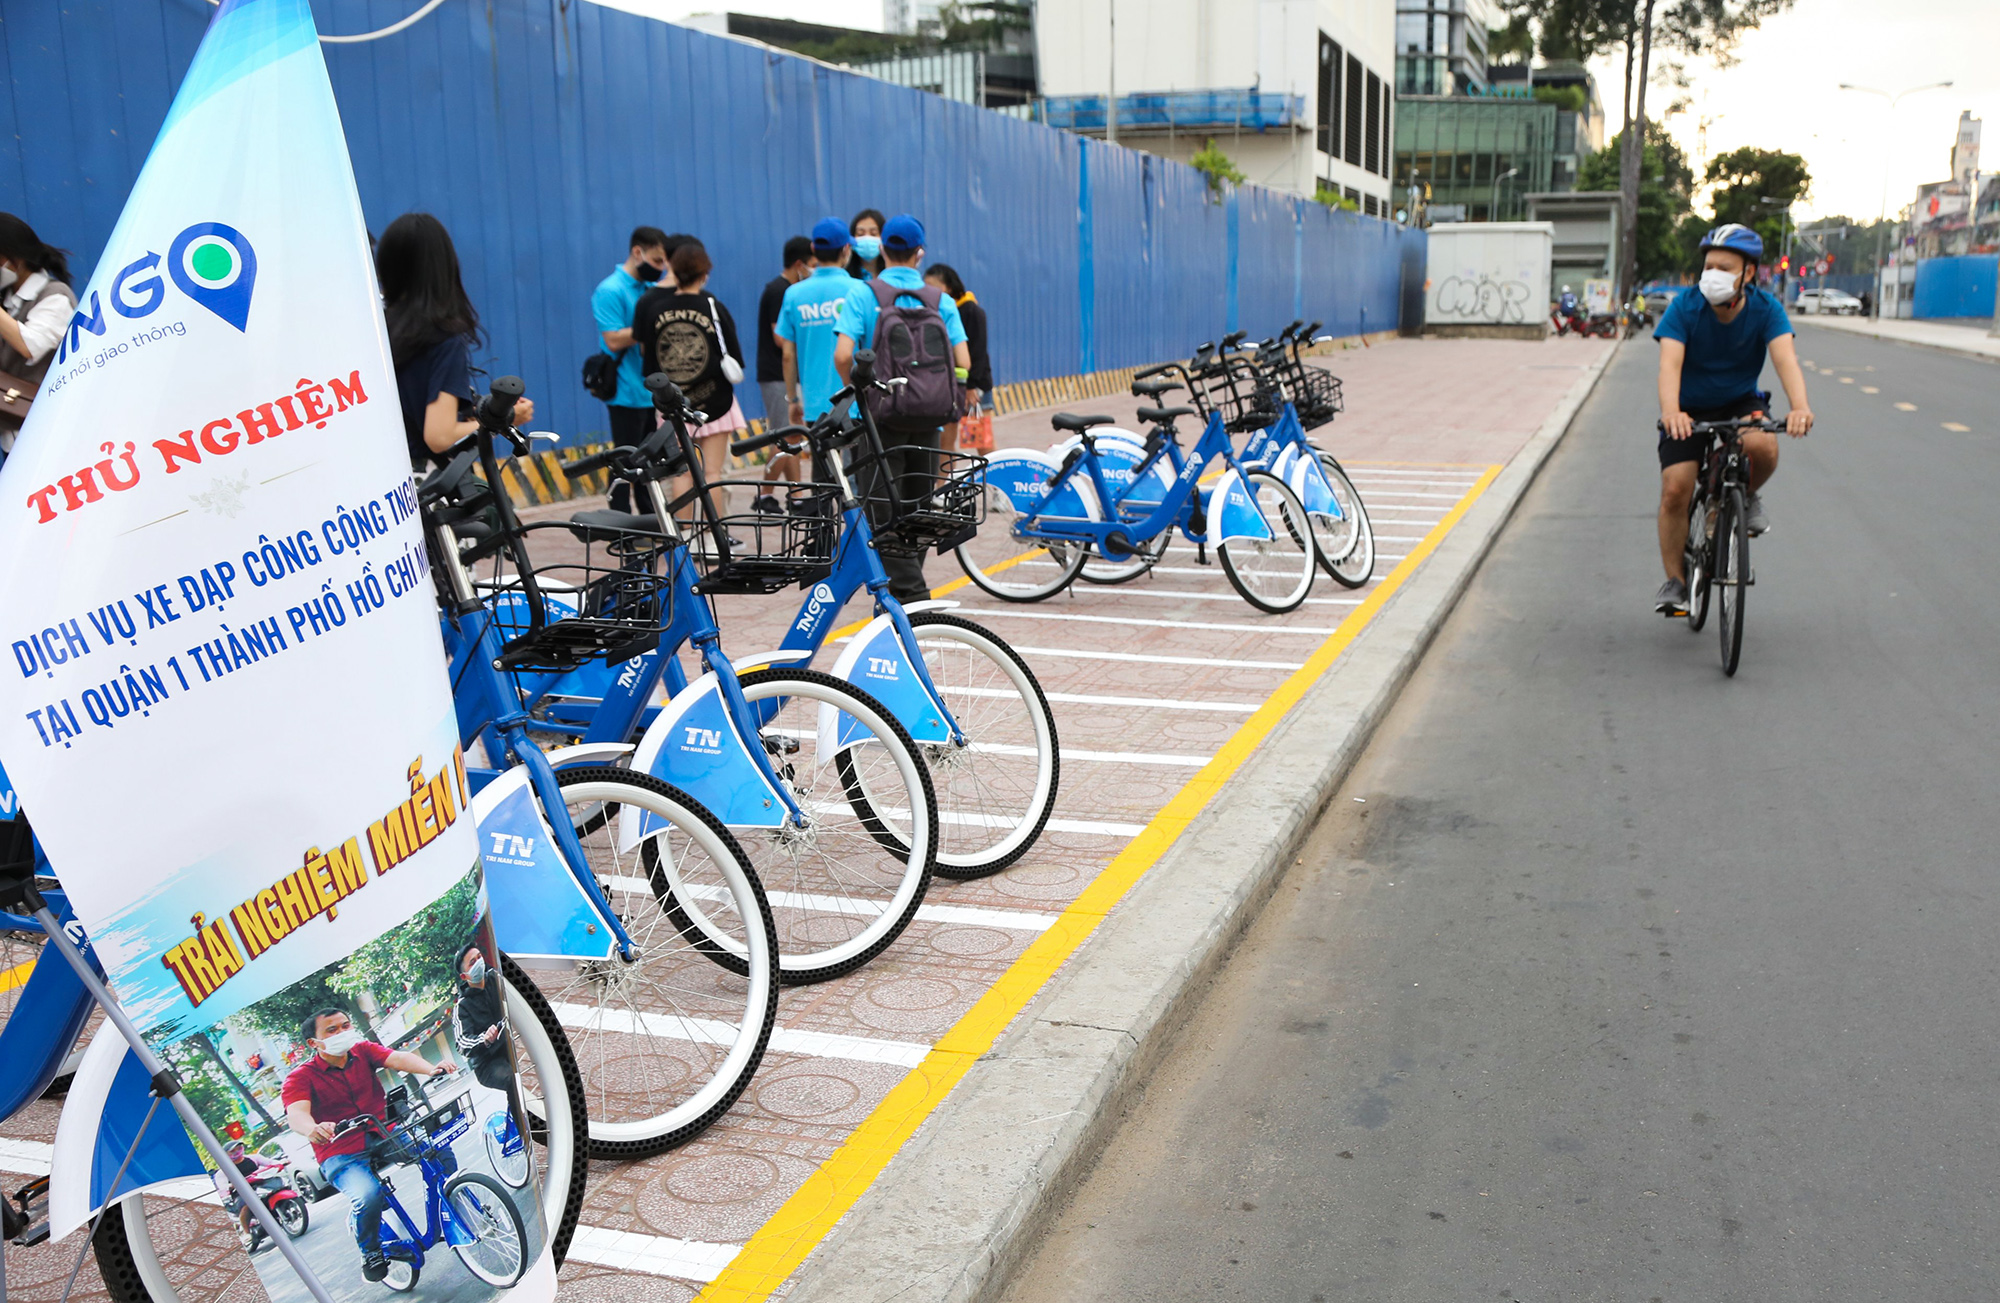 Hàng chục xe đạp vừa được nhà đầu tư đặt tại vỉa hẻ trên đường Lê Lợi (quận 1) để vận hành thử nghiệm dịch vụ xe đạp công cộng đầu tiên ở TP.HCM.